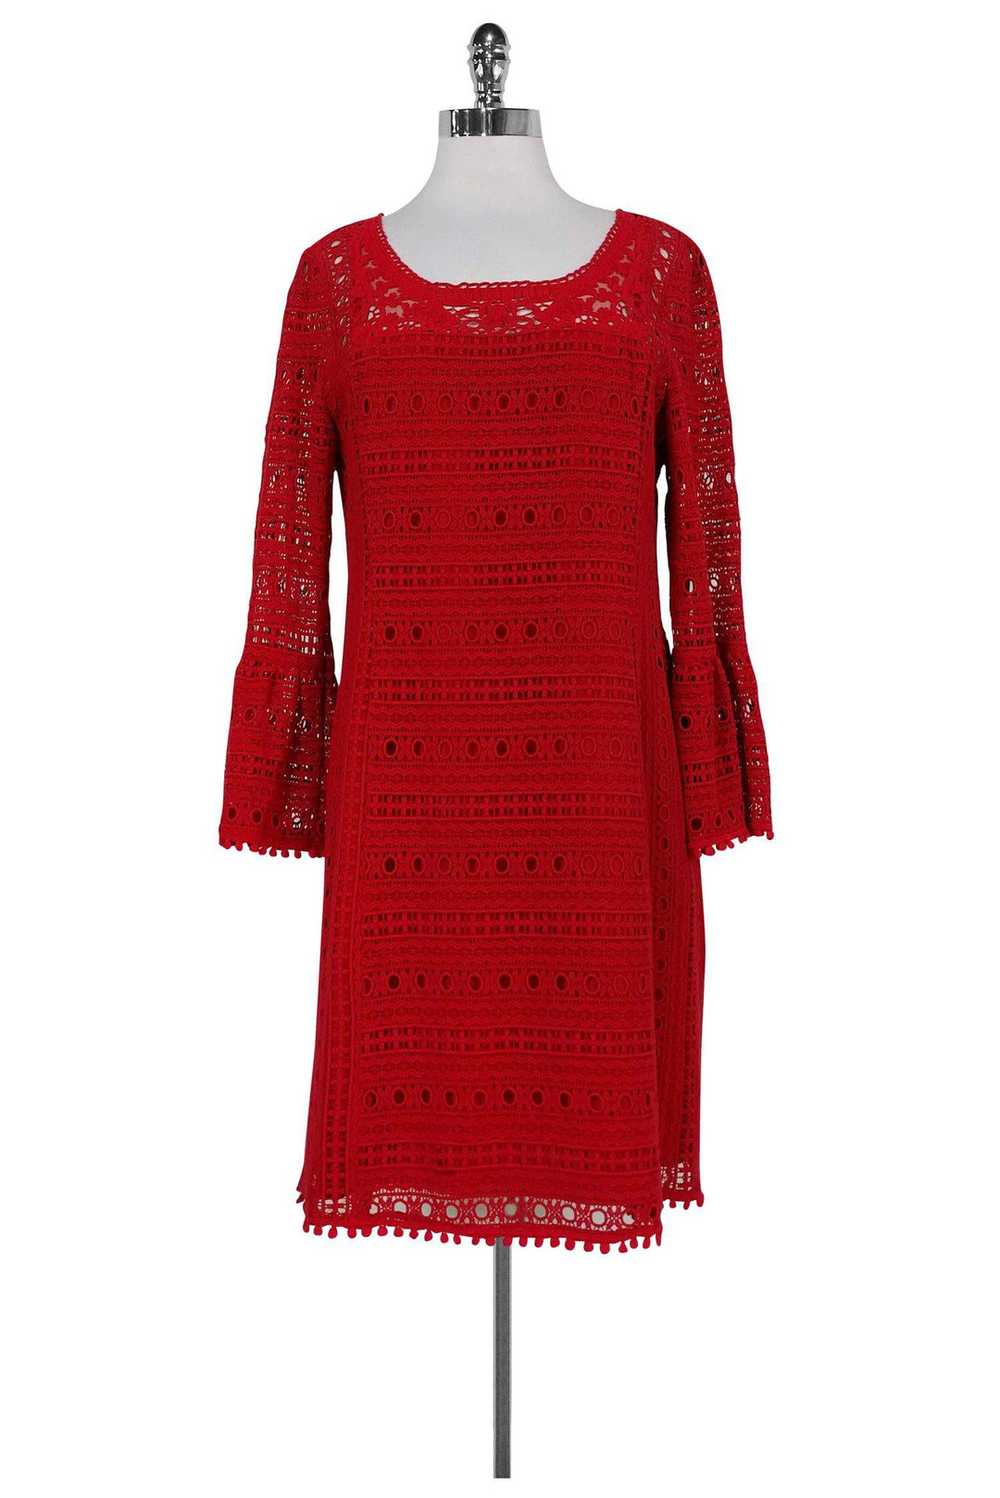 Nanette Lepore - Red Eyelet Dress w/ Bell Sleeves… - image 1